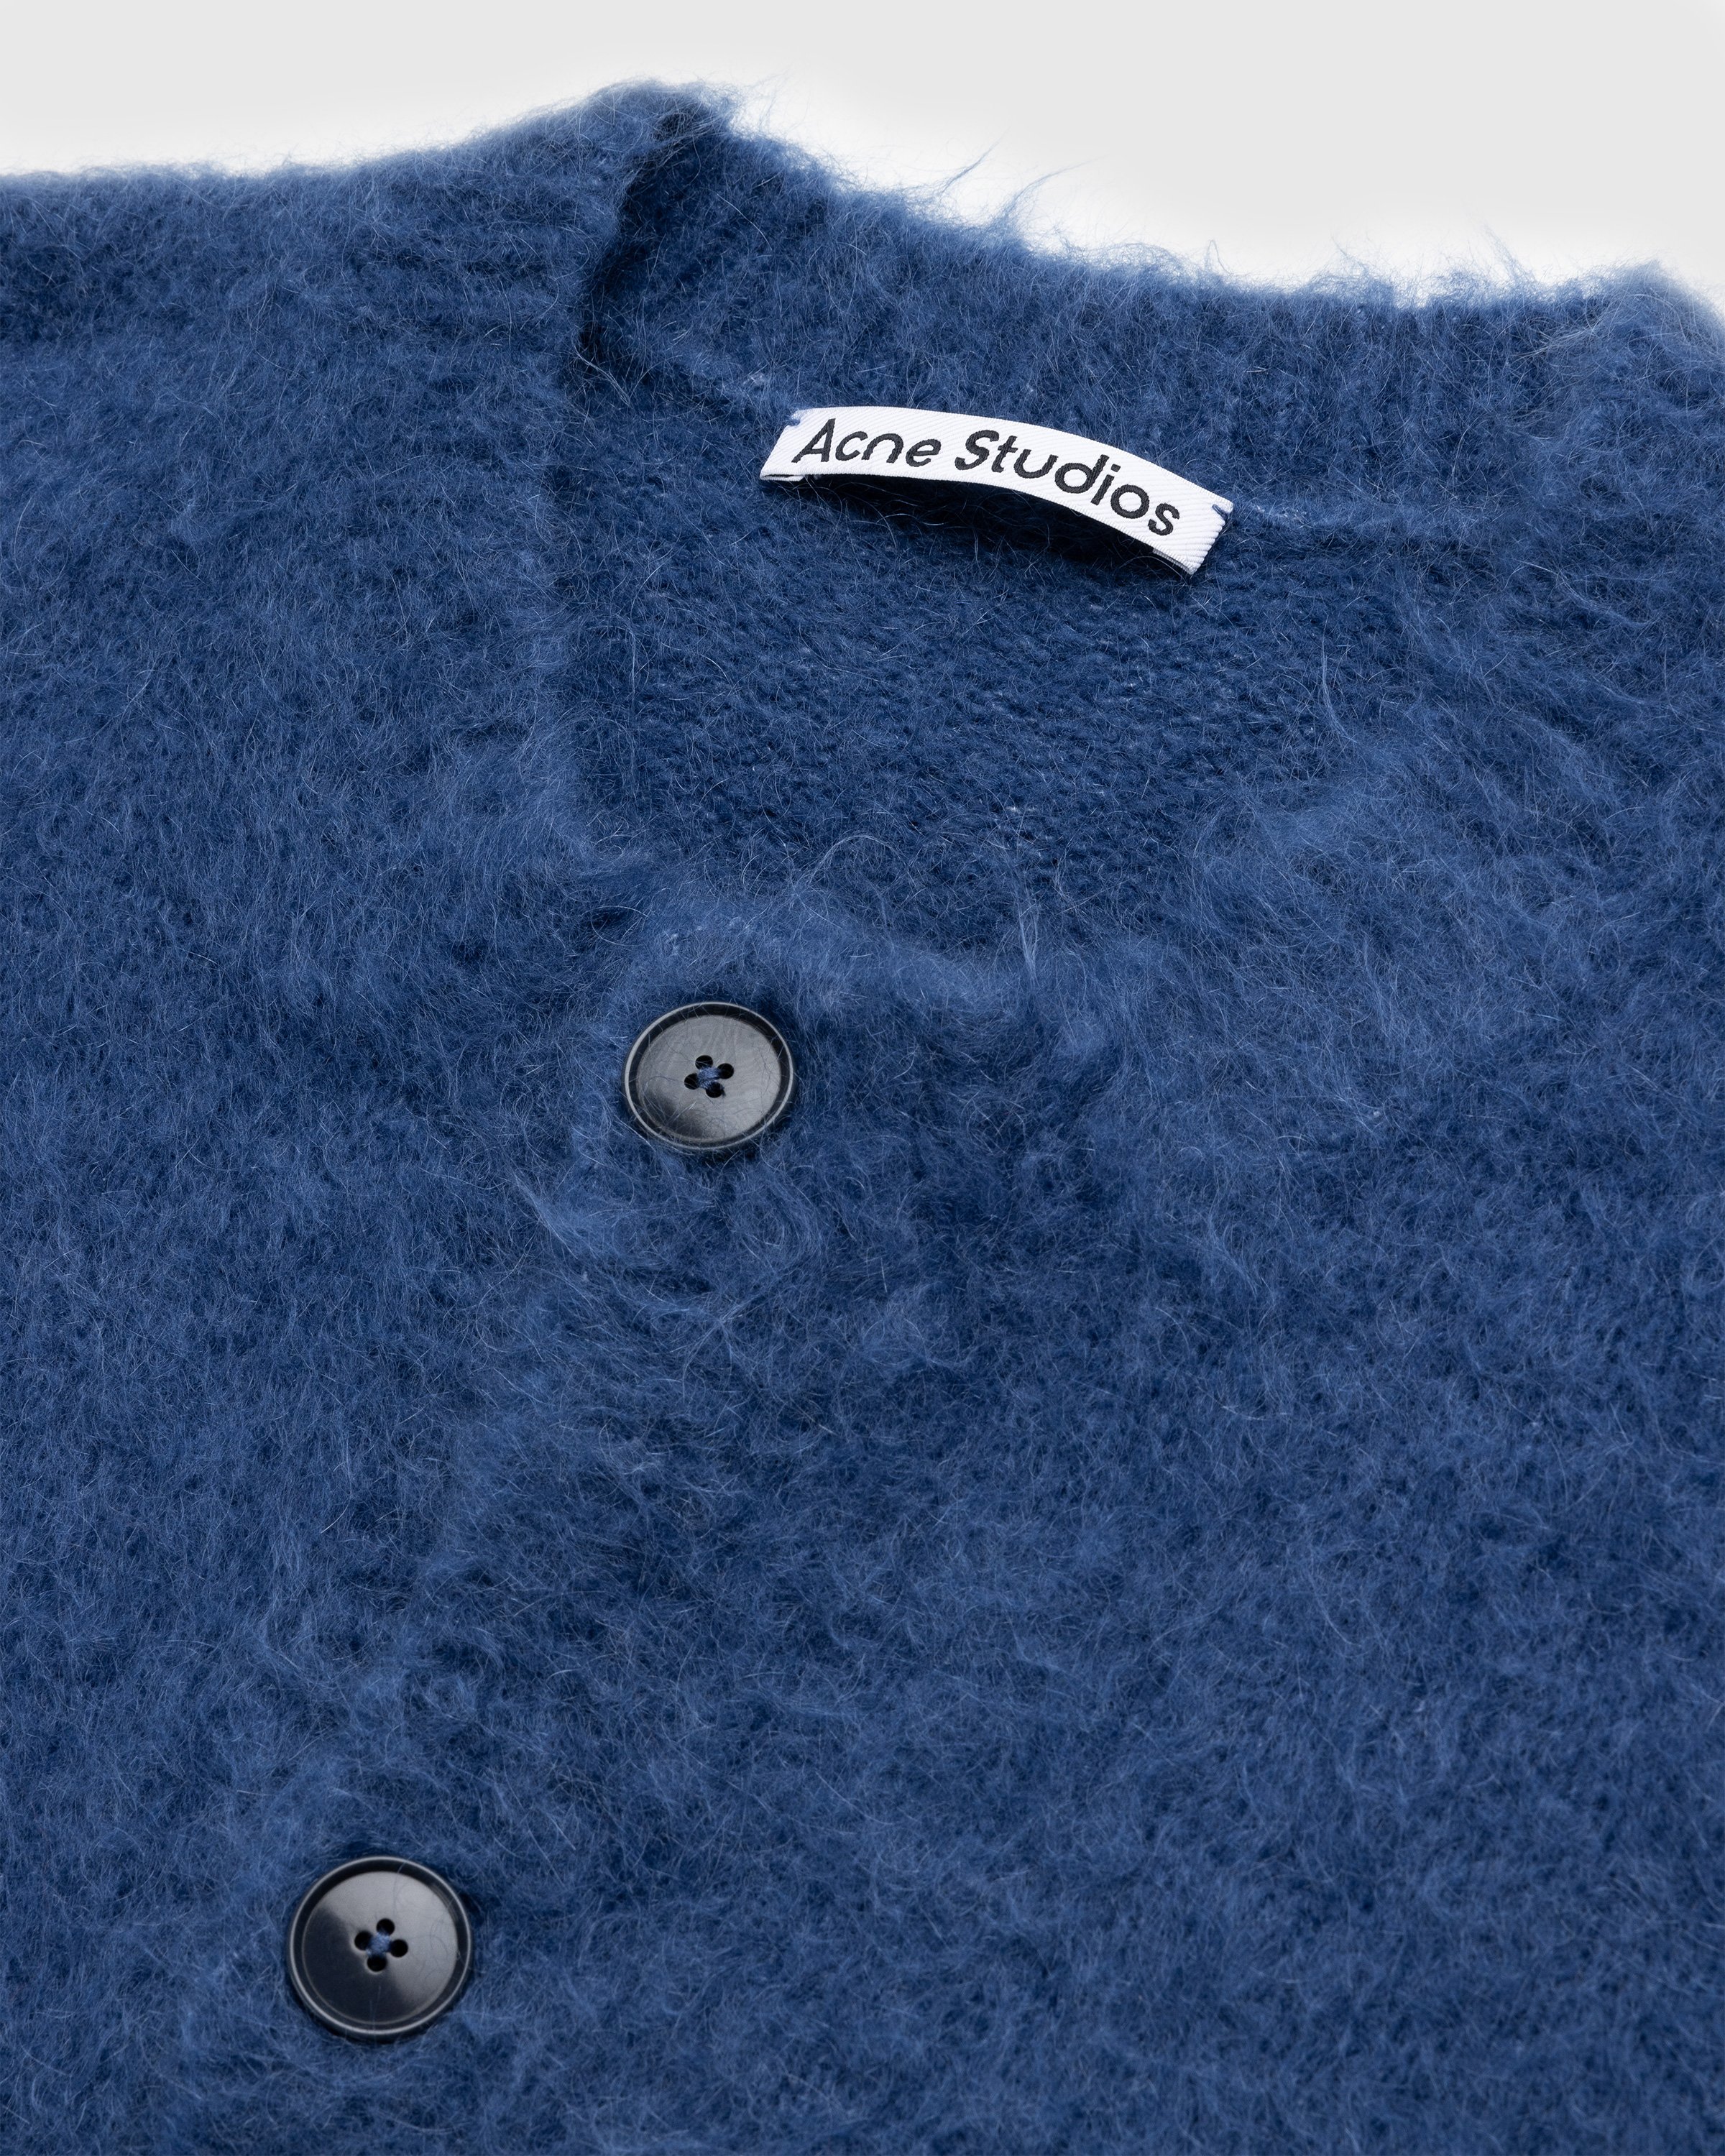 Acne Studios - Brushed Wool Cardigan Blue - Clothing - Blue - Image 4